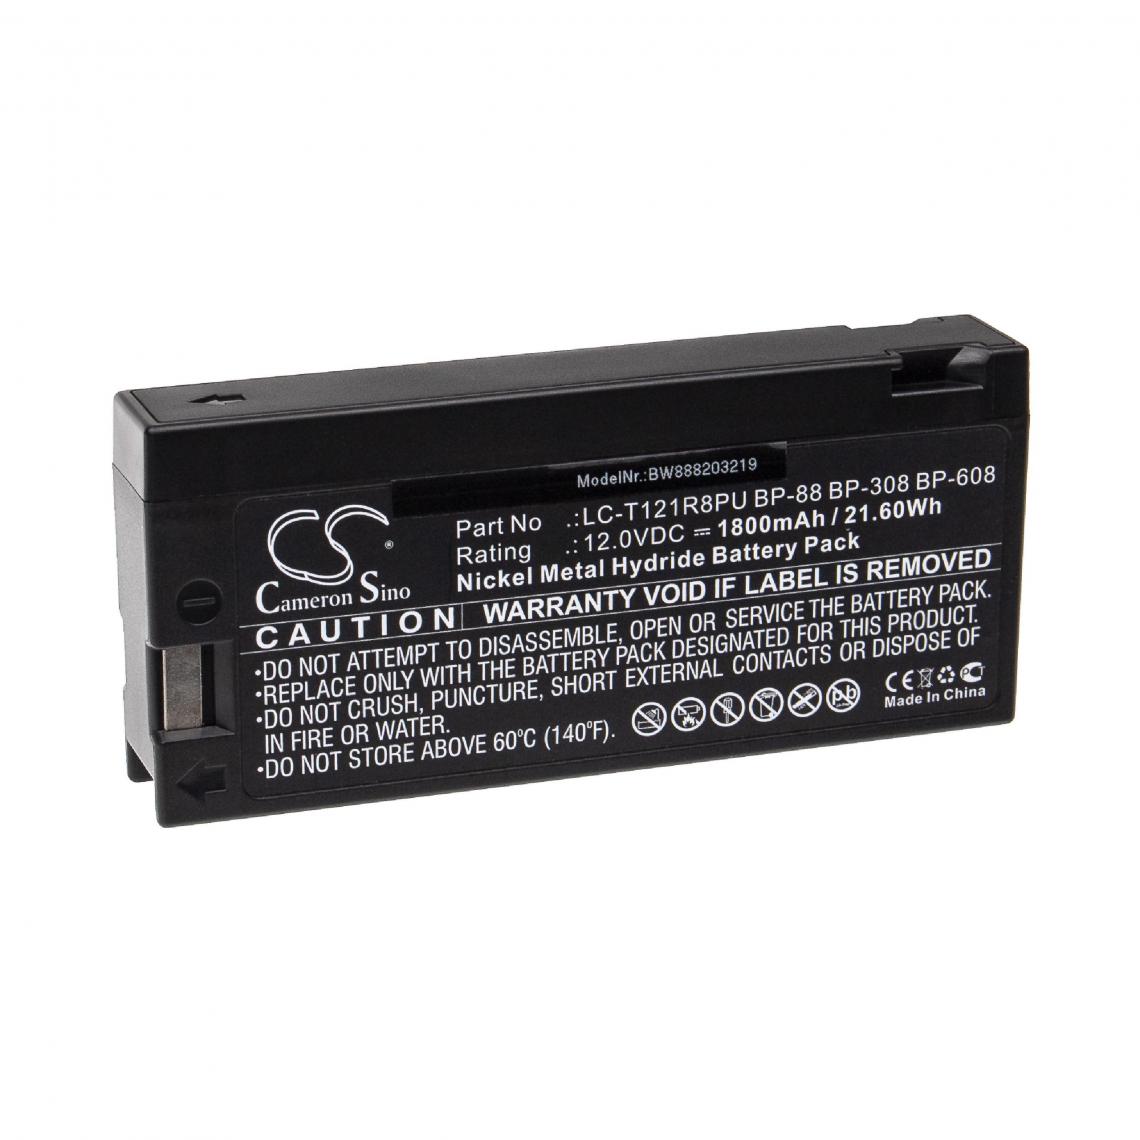 Vhbw - vhbw Batterie compatible avec CURTIS MATHES DV700, FV500, FV700, FV800, GV700, VSBS0016 appareil médical (1800mAh, 12V, NiMH) - Piles spécifiques